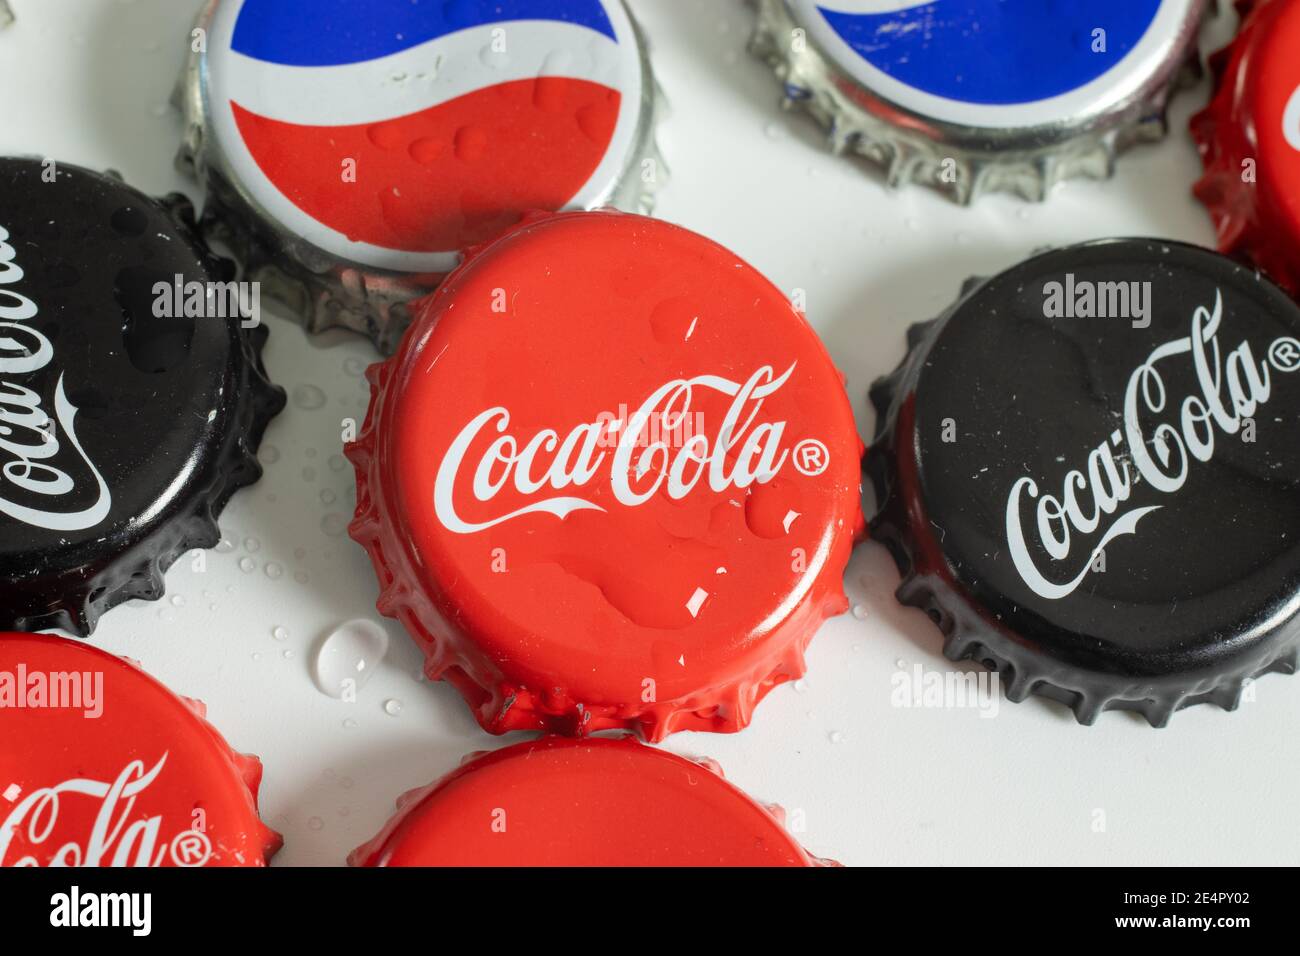 New York, USA - 1. Januar 2021: Coca Cola rote Flaschenkappe Draufsicht. Coca-Cola Markenlogo, illustrative Editorial Stockfoto